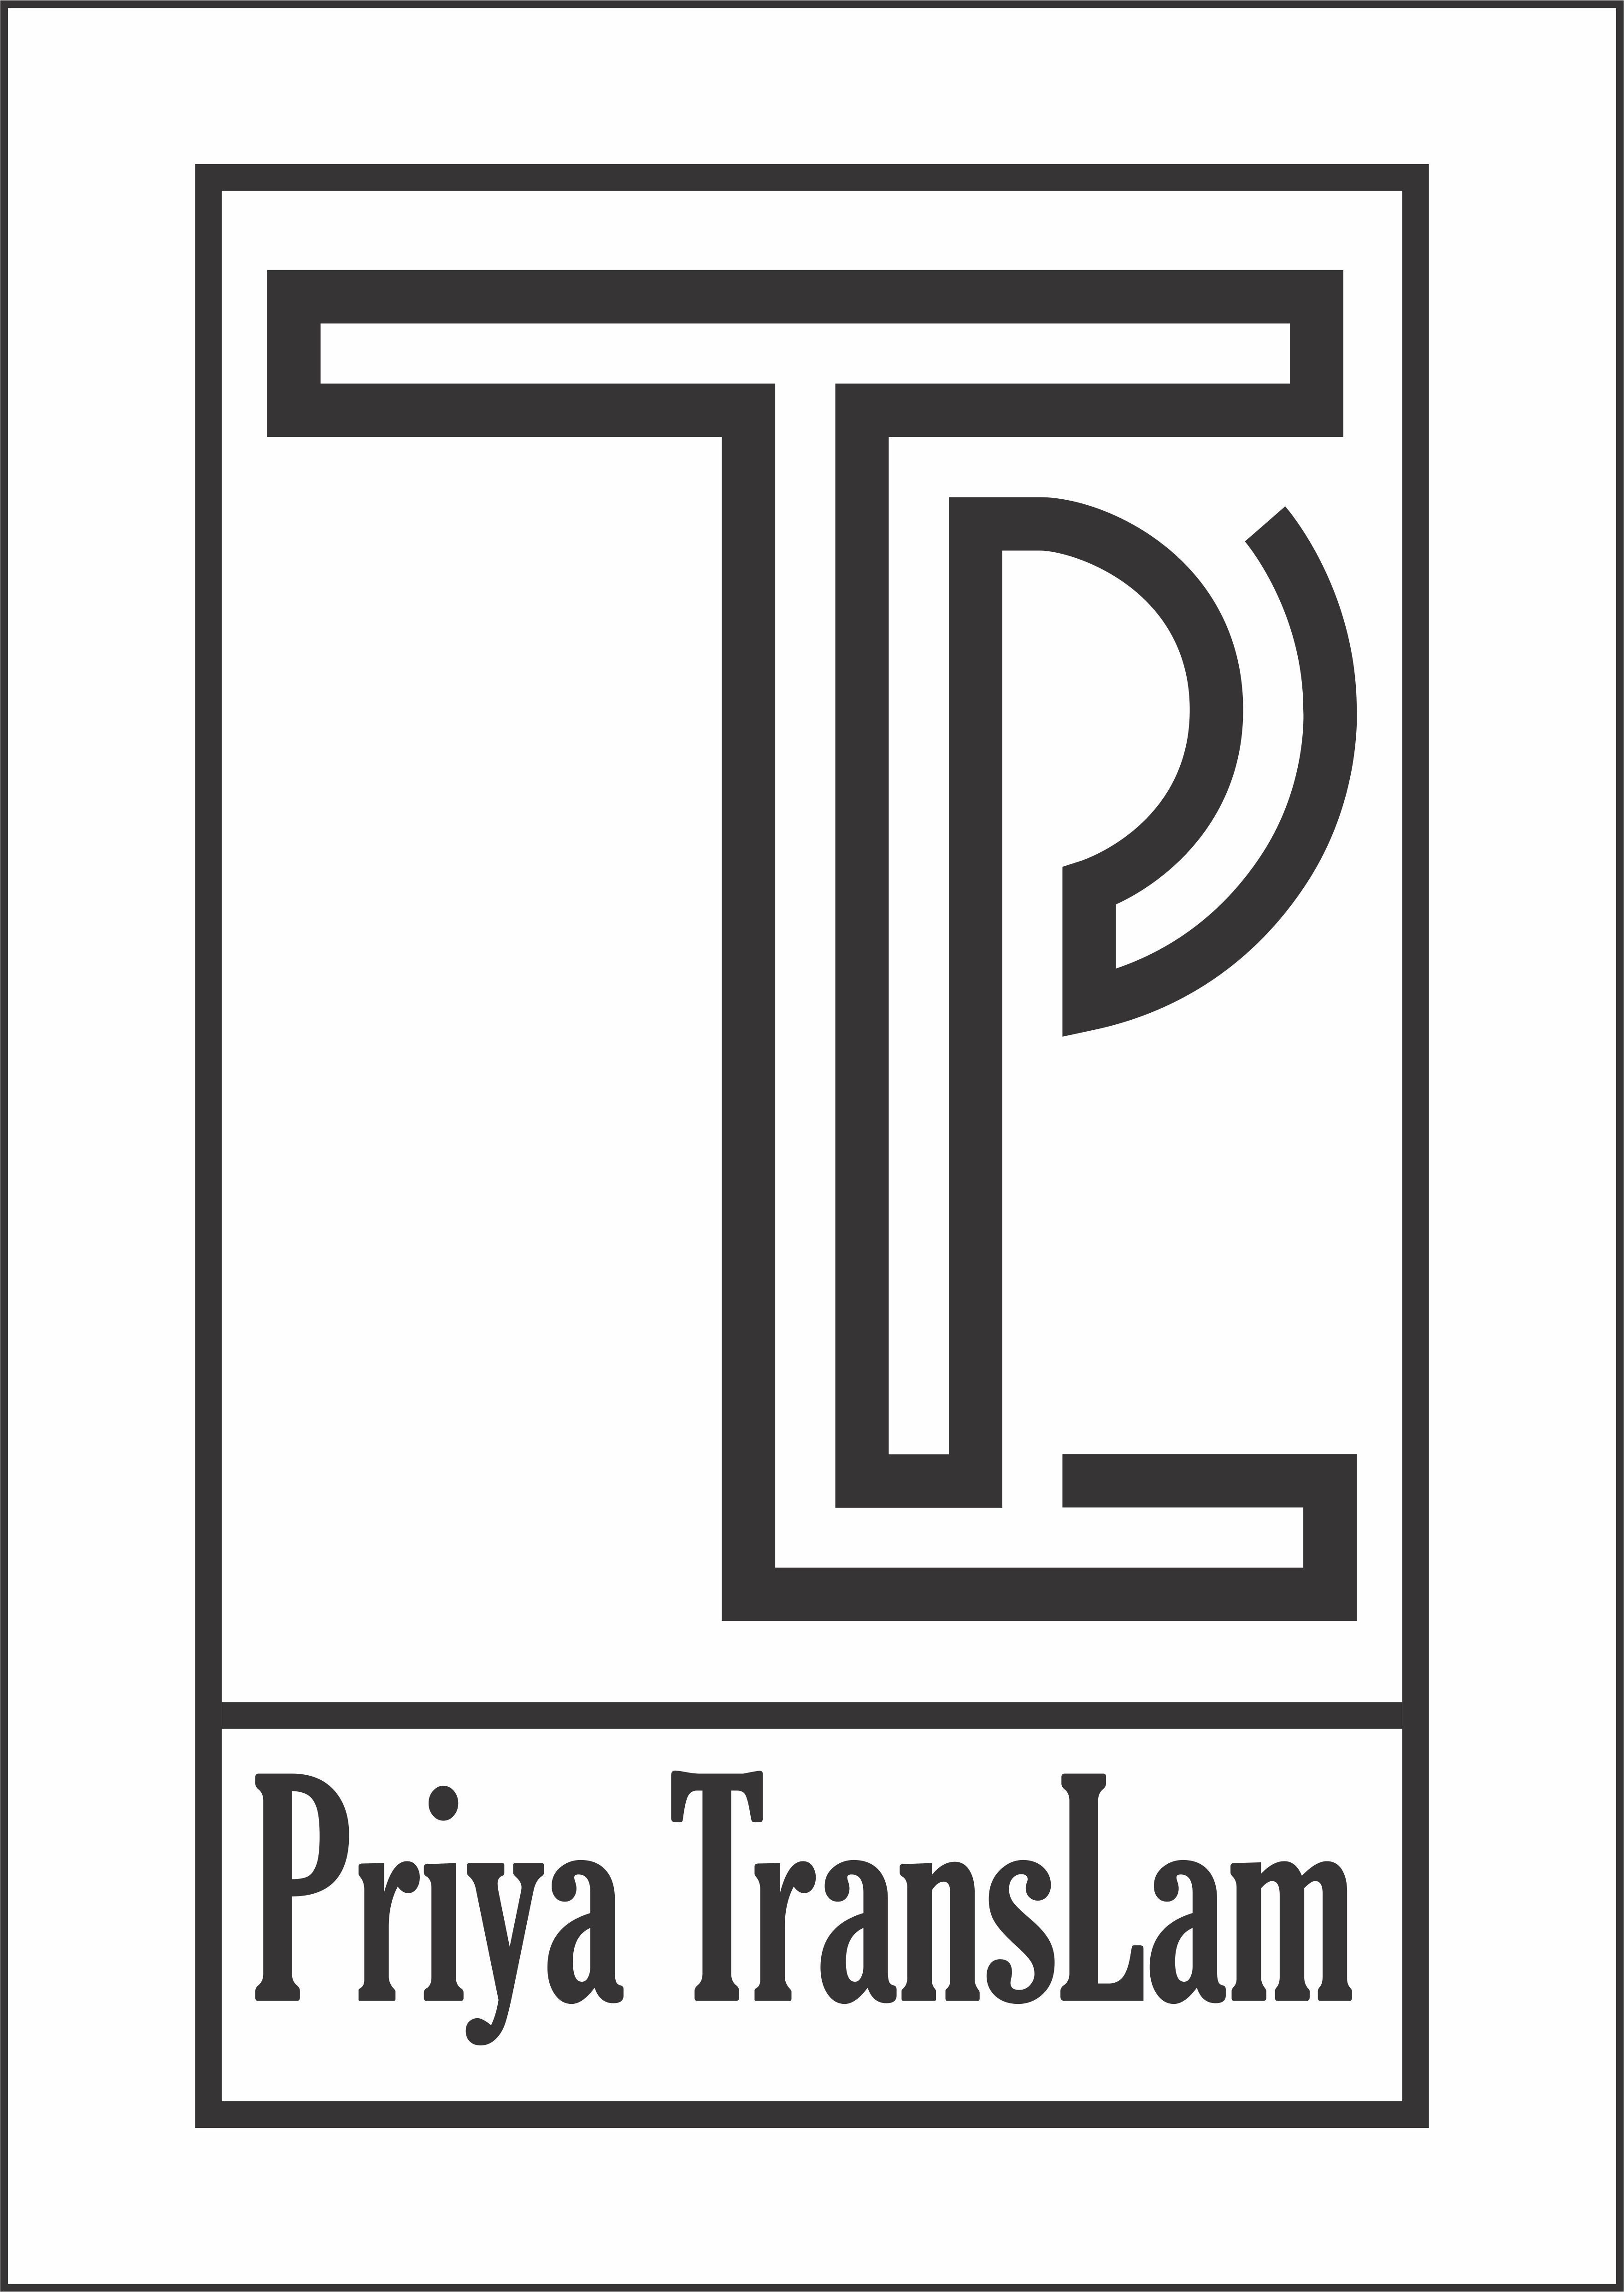 Priya Logo | Free Name Design Tool from Flaming Text